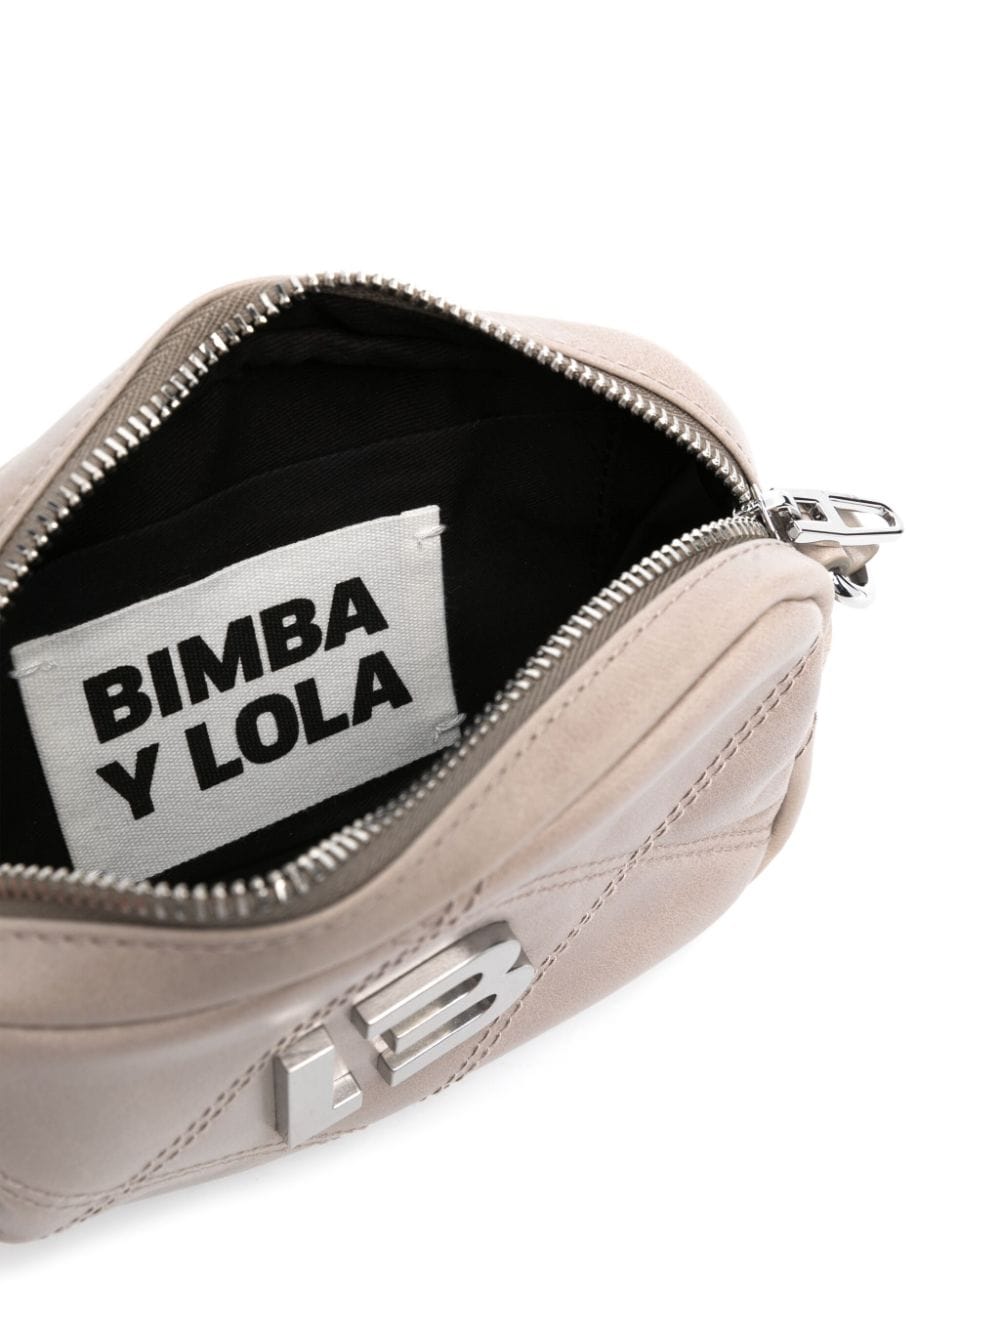 Bimba y Lola Small Leather Crossbody Bag - Farfetch